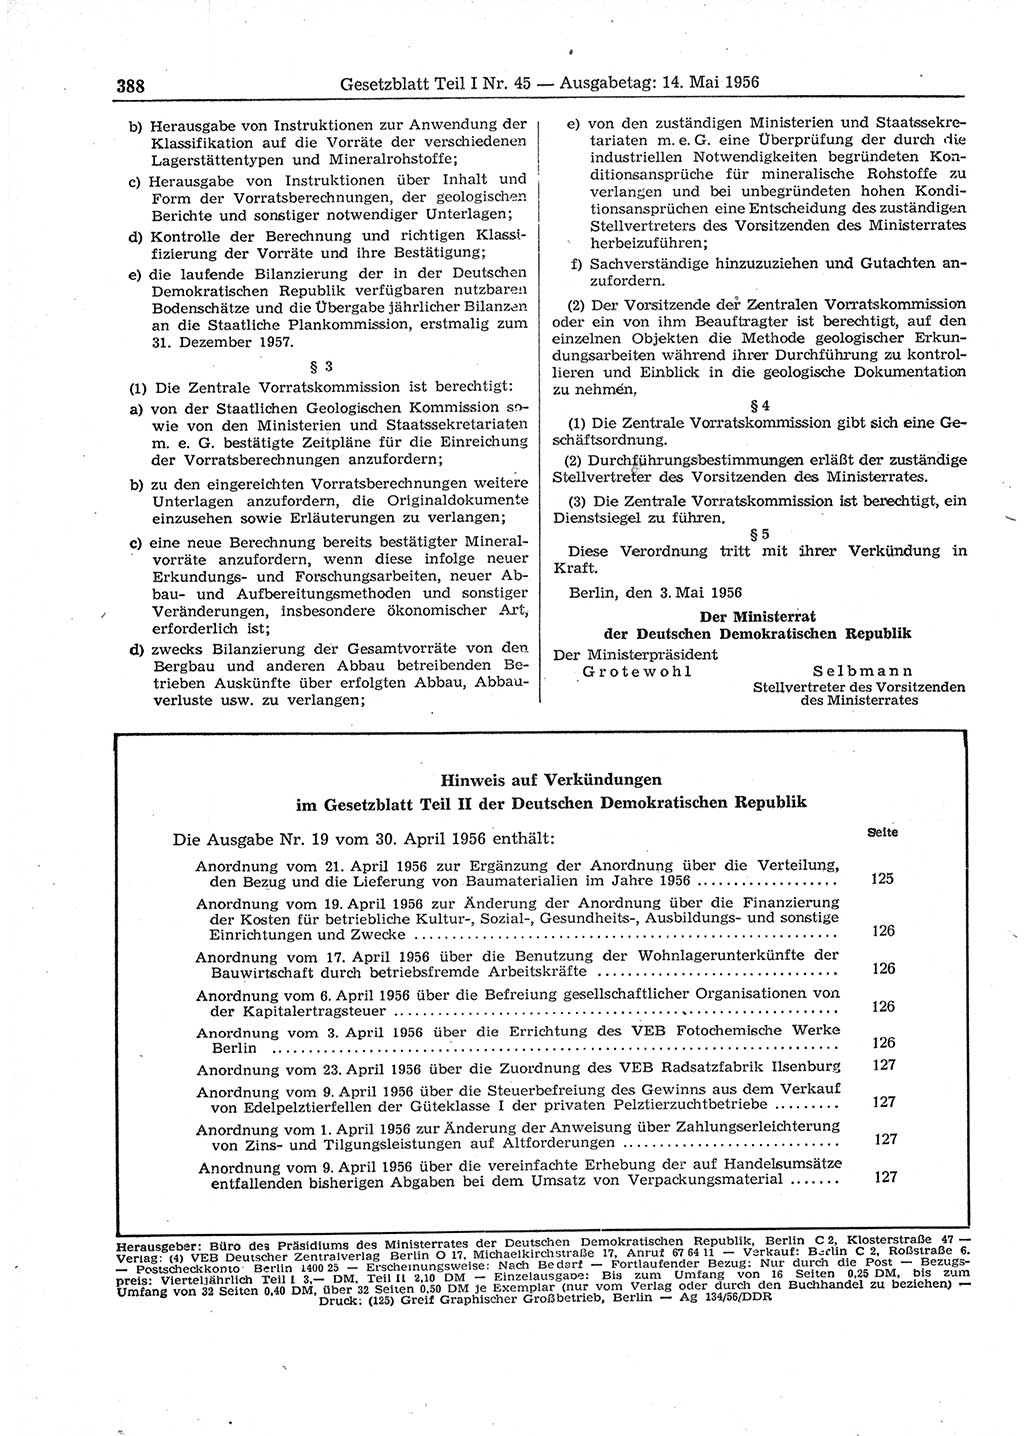 Gesetzblatt (GBl.) der Deutschen Demokratischen Republik (DDR) Teil Ⅰ 1956, Seite 388 (GBl. DDR Ⅰ 1956, S. 388)